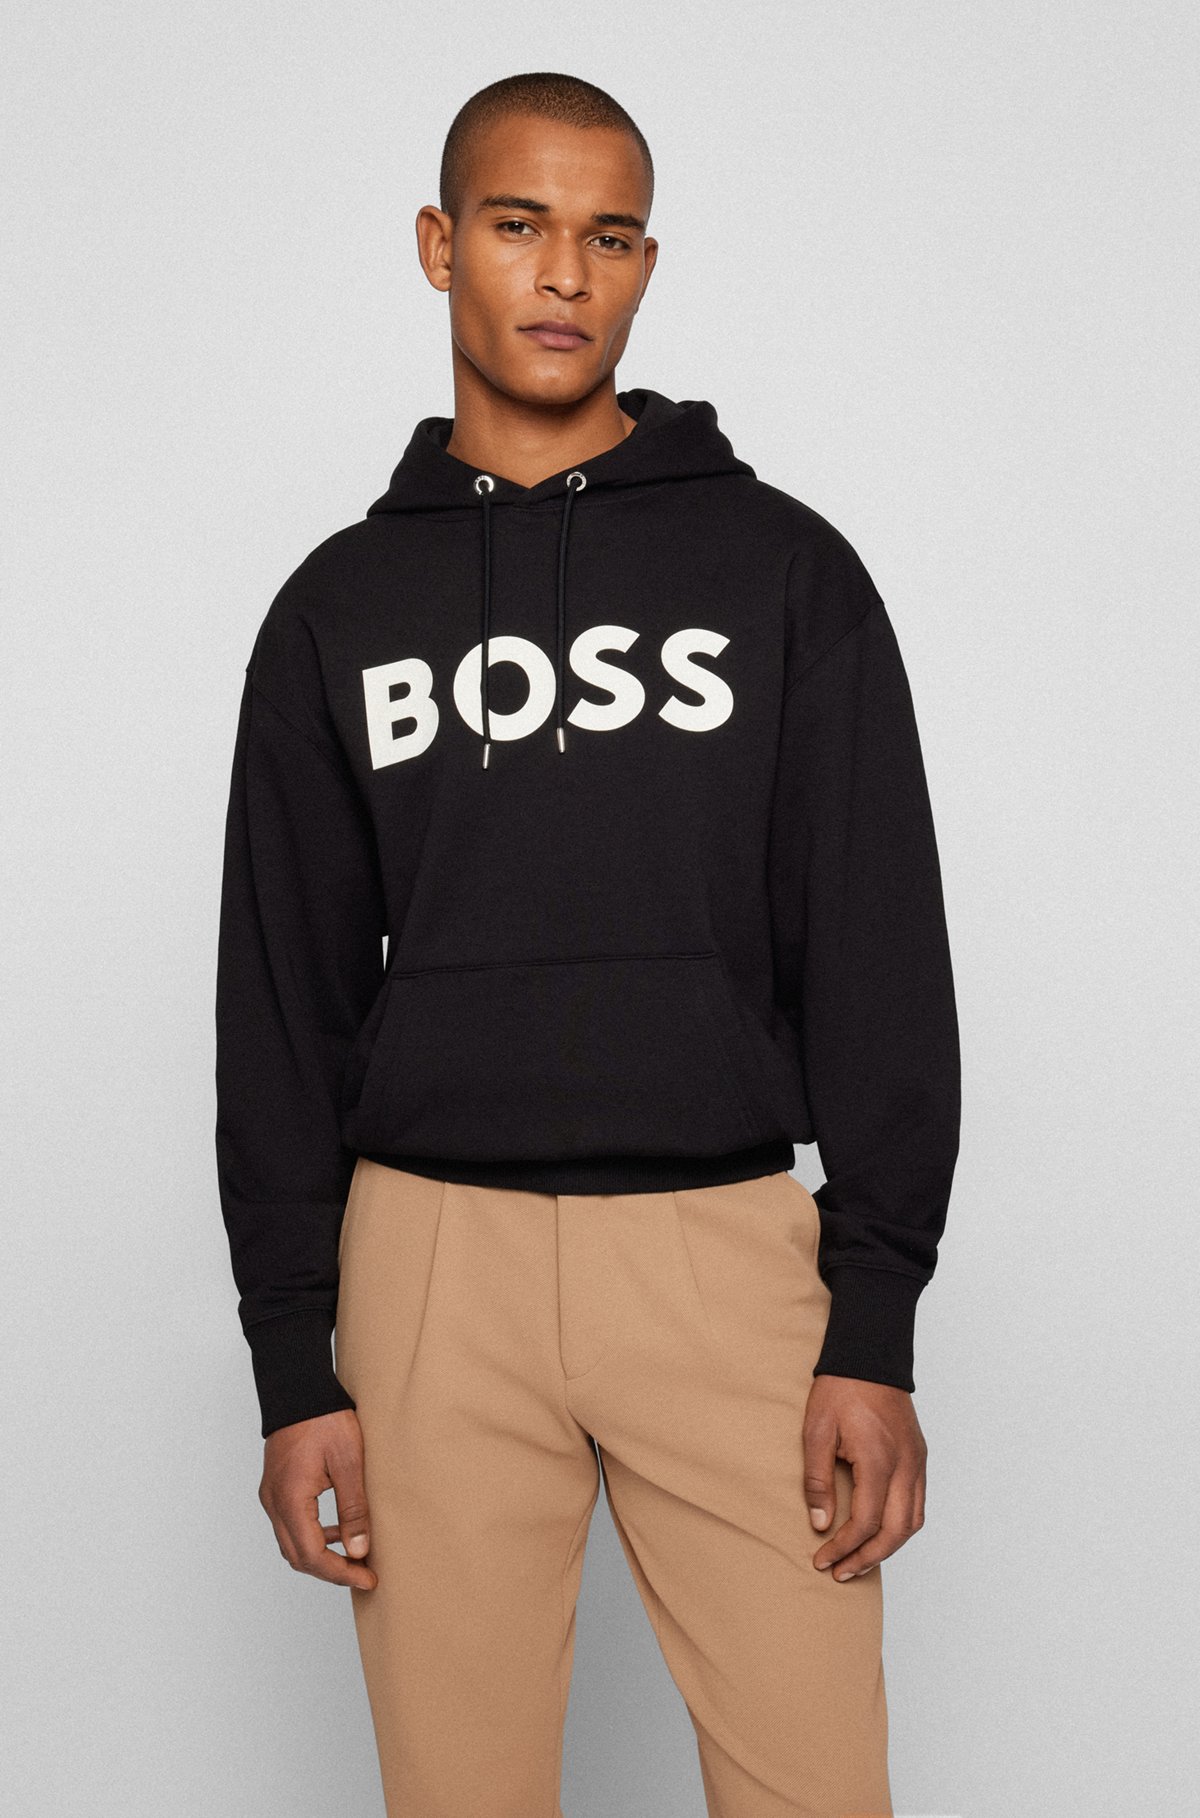 Spreekwoord Blijkbaar spiritueel BOSS - Organic-cotton hooded sweatshirt with contrast logo